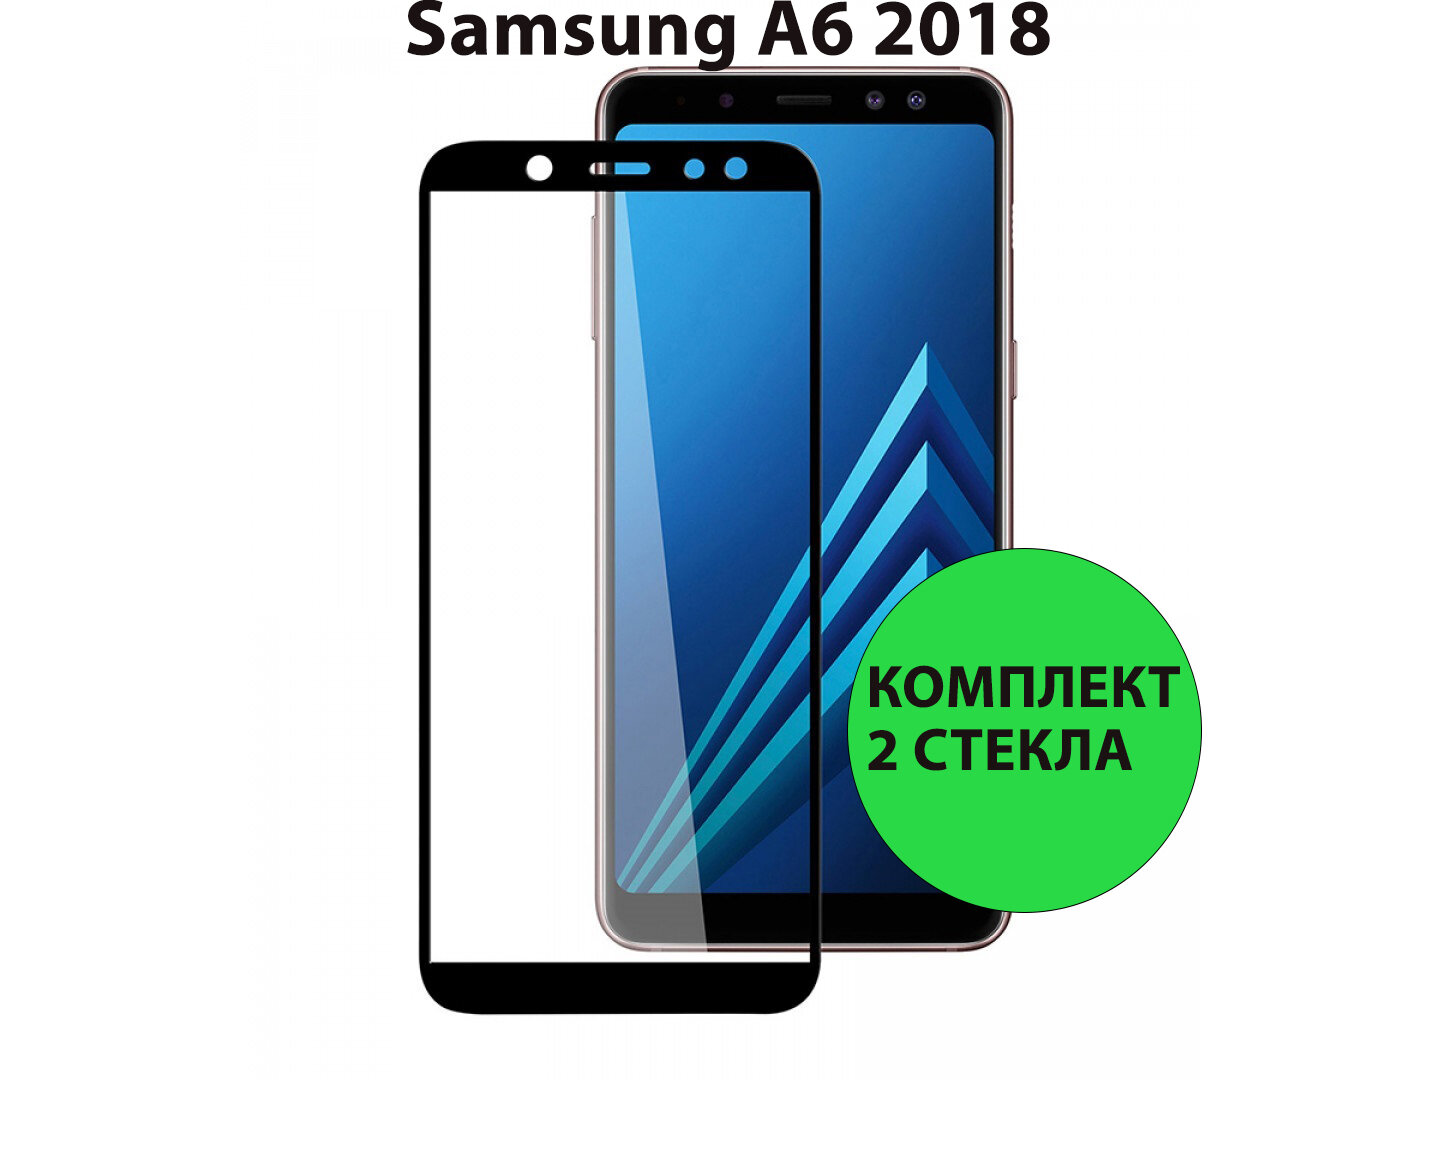 Комплект 2шт. Защитные стекла 3D Tempered Glass для Samsung Galaxy A6 (2018) полный клей ( черная рамка )